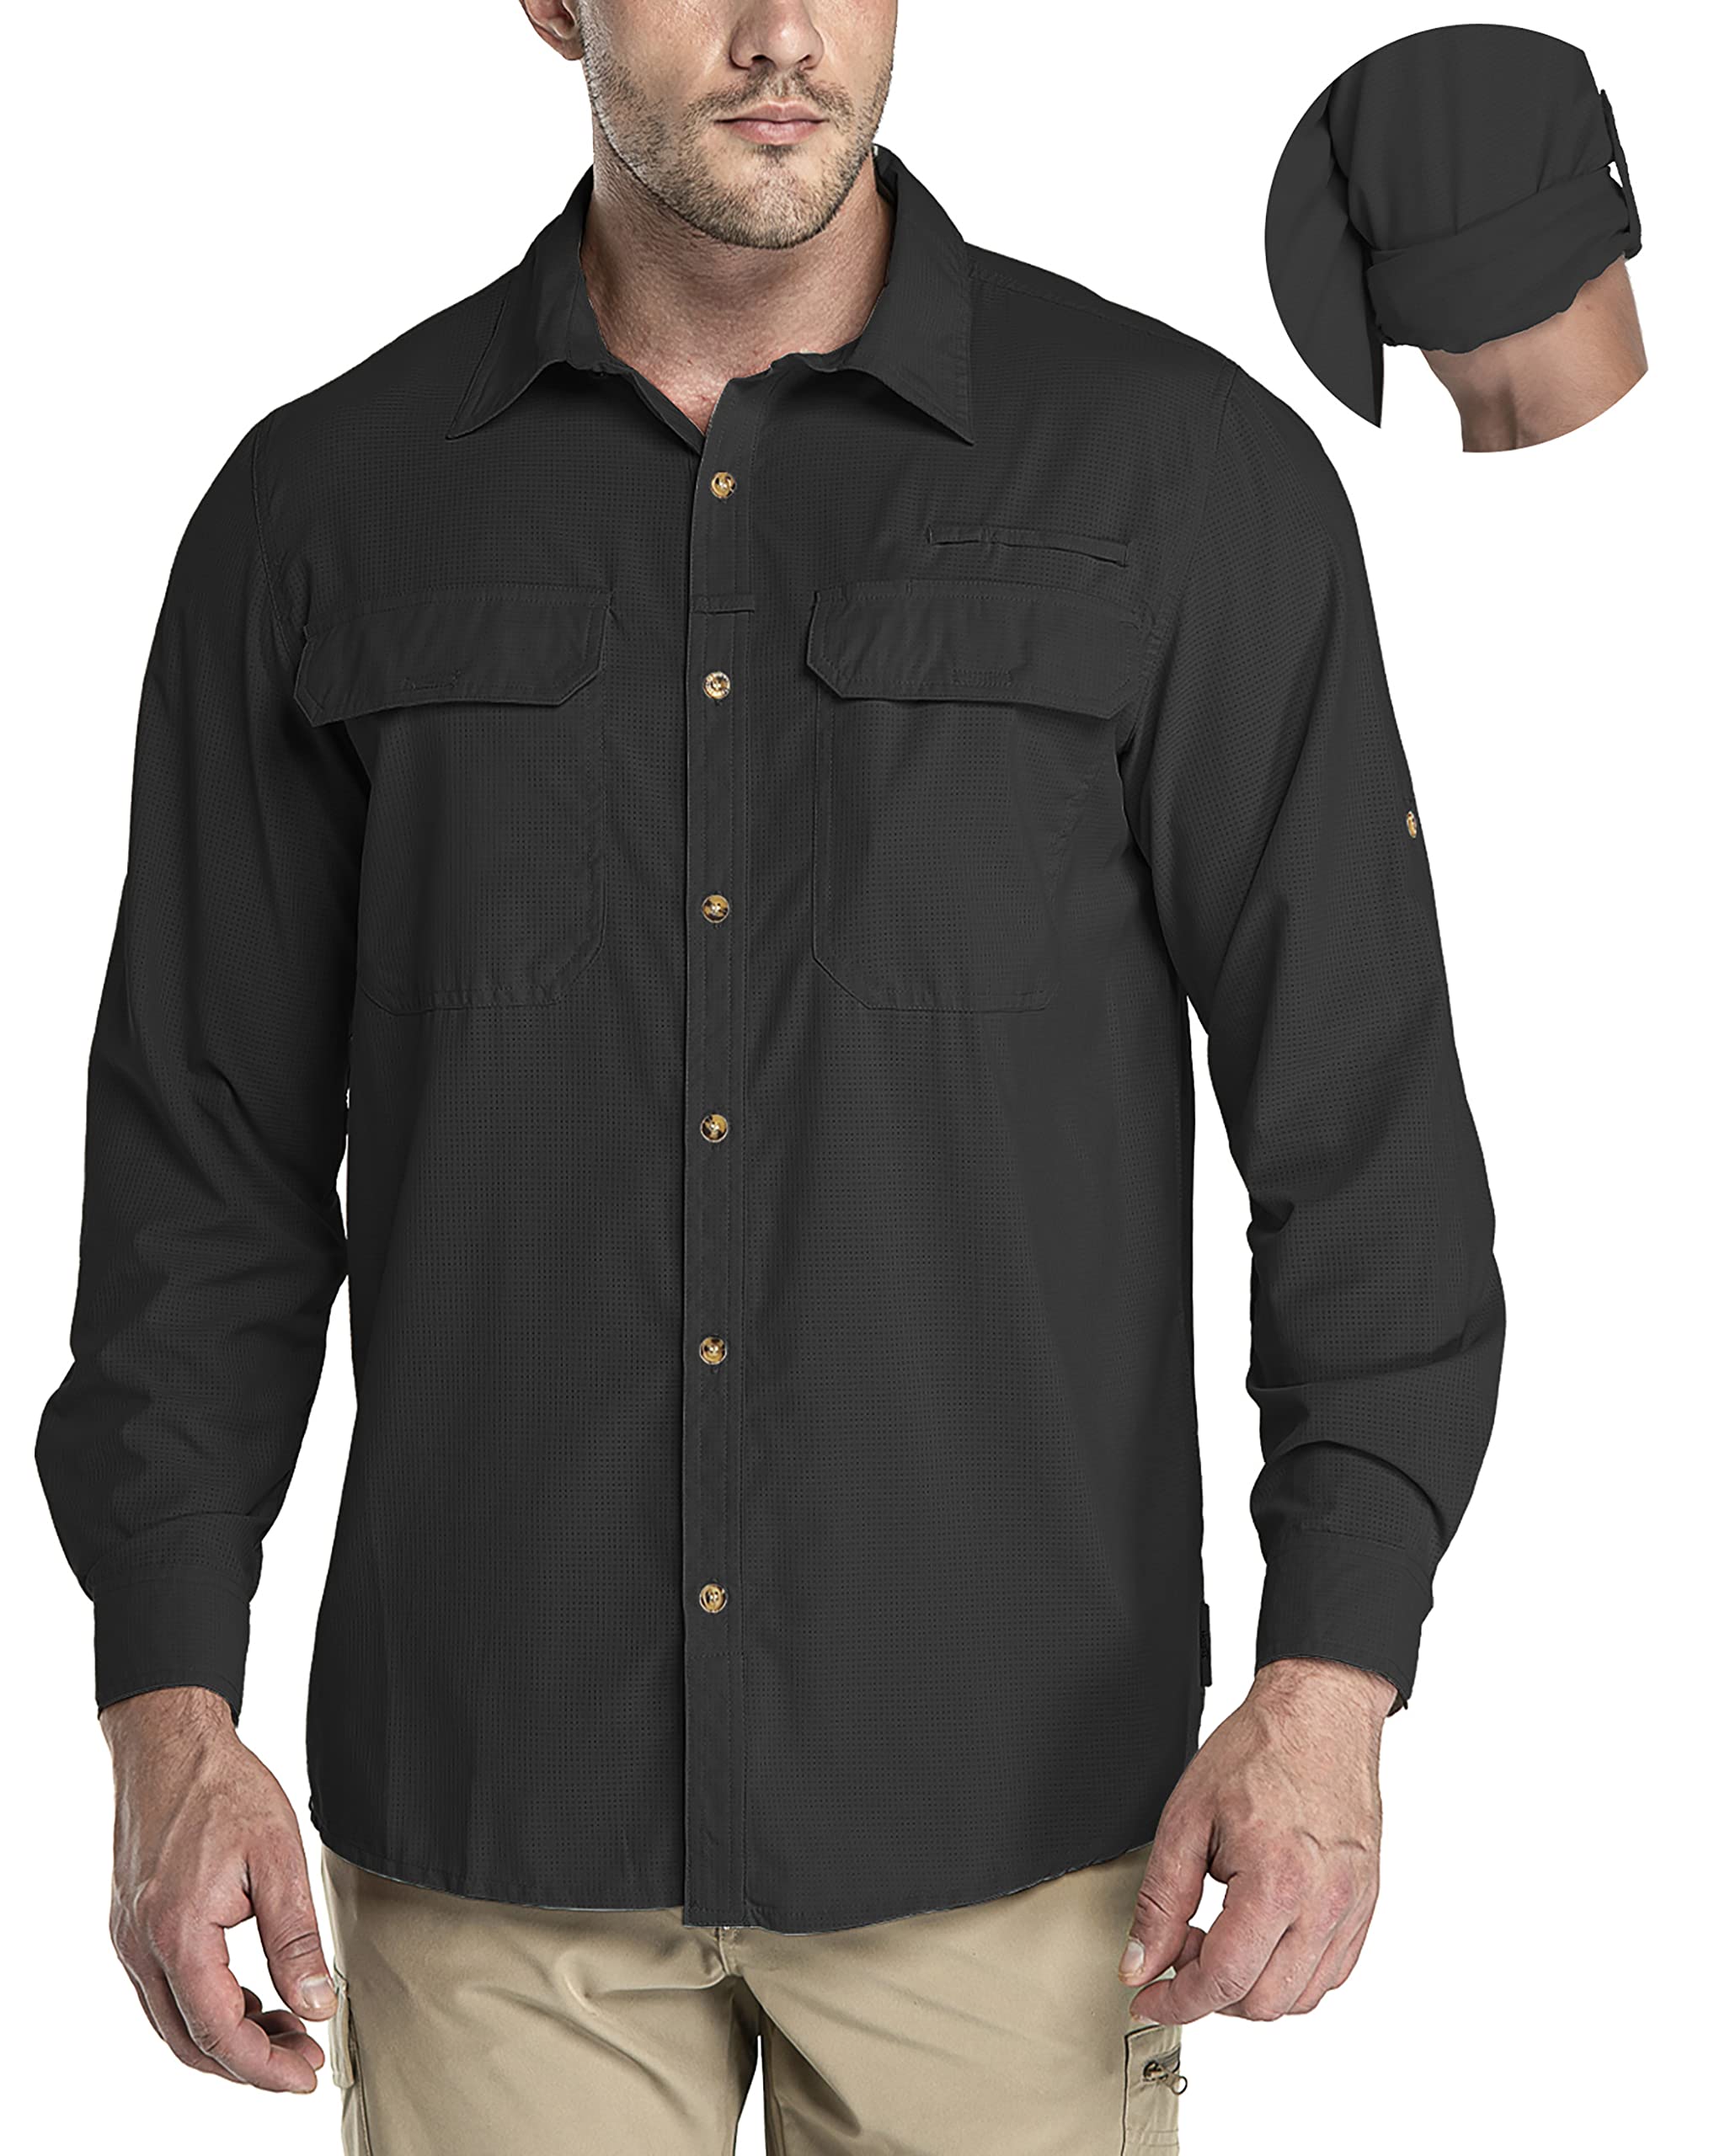 Buy 33,000ft Men's Long Sleeve Sun Protection Shirt UPF 50+ UV